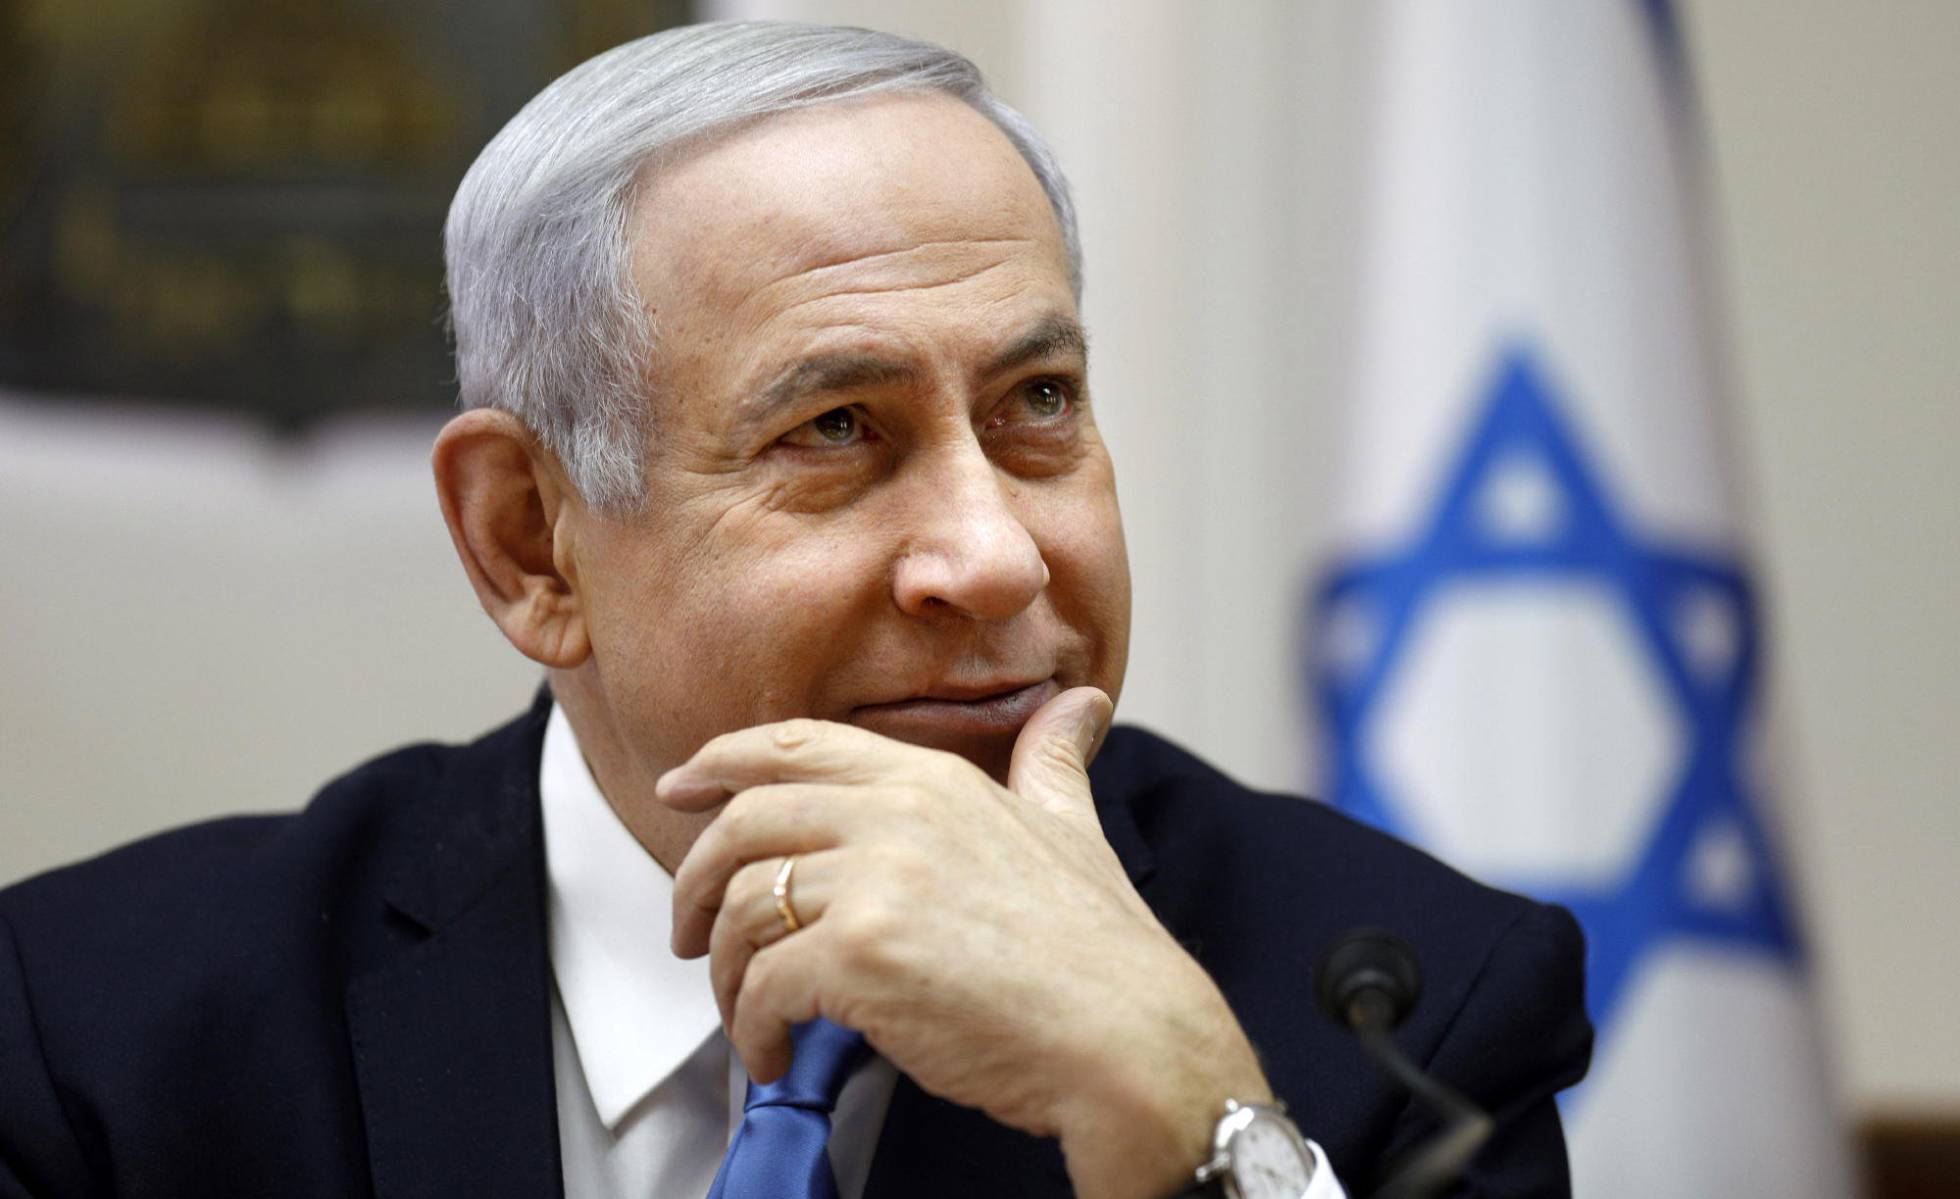 Netanyahu: “Israel solo pertenece a los judíos, no a todos sus ciudadanos”